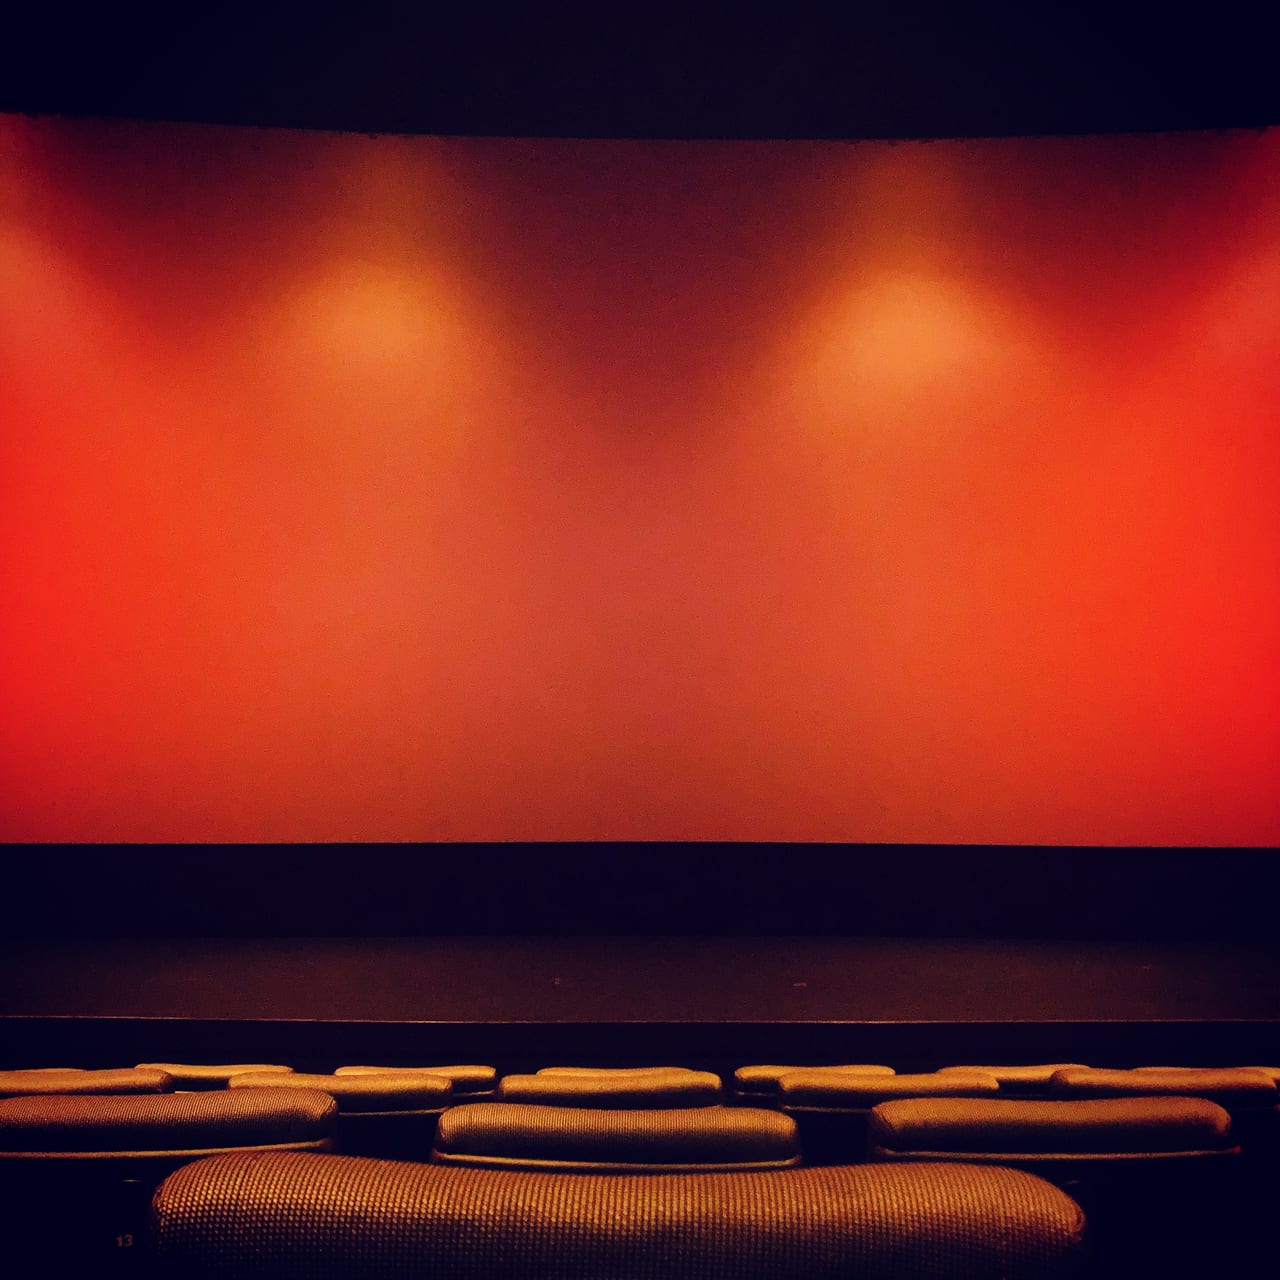 鳥取市 鳥取シネマはレトロな映画館 6月19日より営業再開 ジブリ4作品 号外net 鳥取市 東部地域